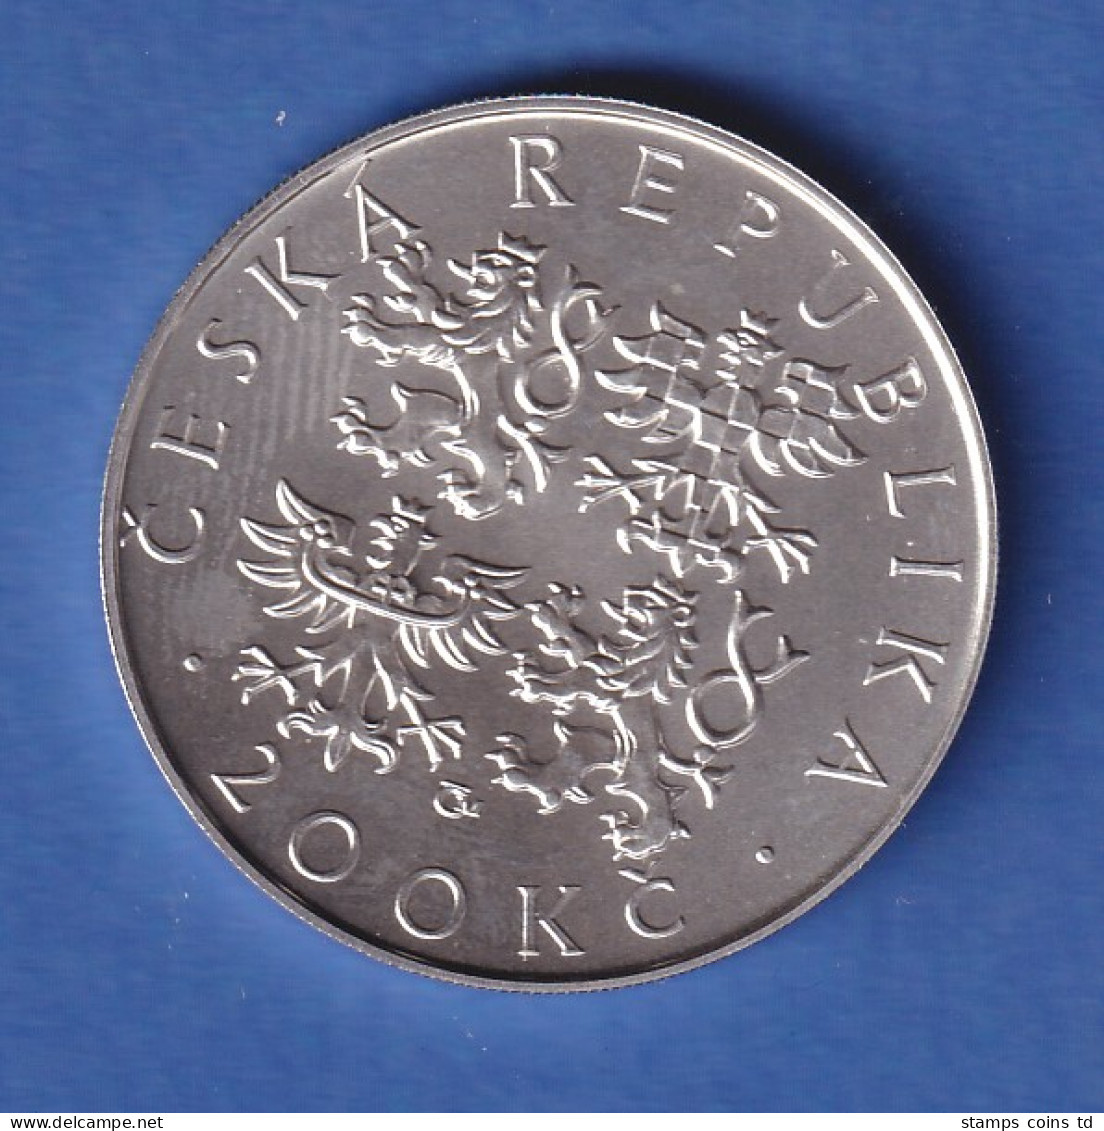 Tschechien 2001 Silbermünze 200 Kronen 100. Geburtstag Von Jaroslav Seifert Stg - Czech Republic